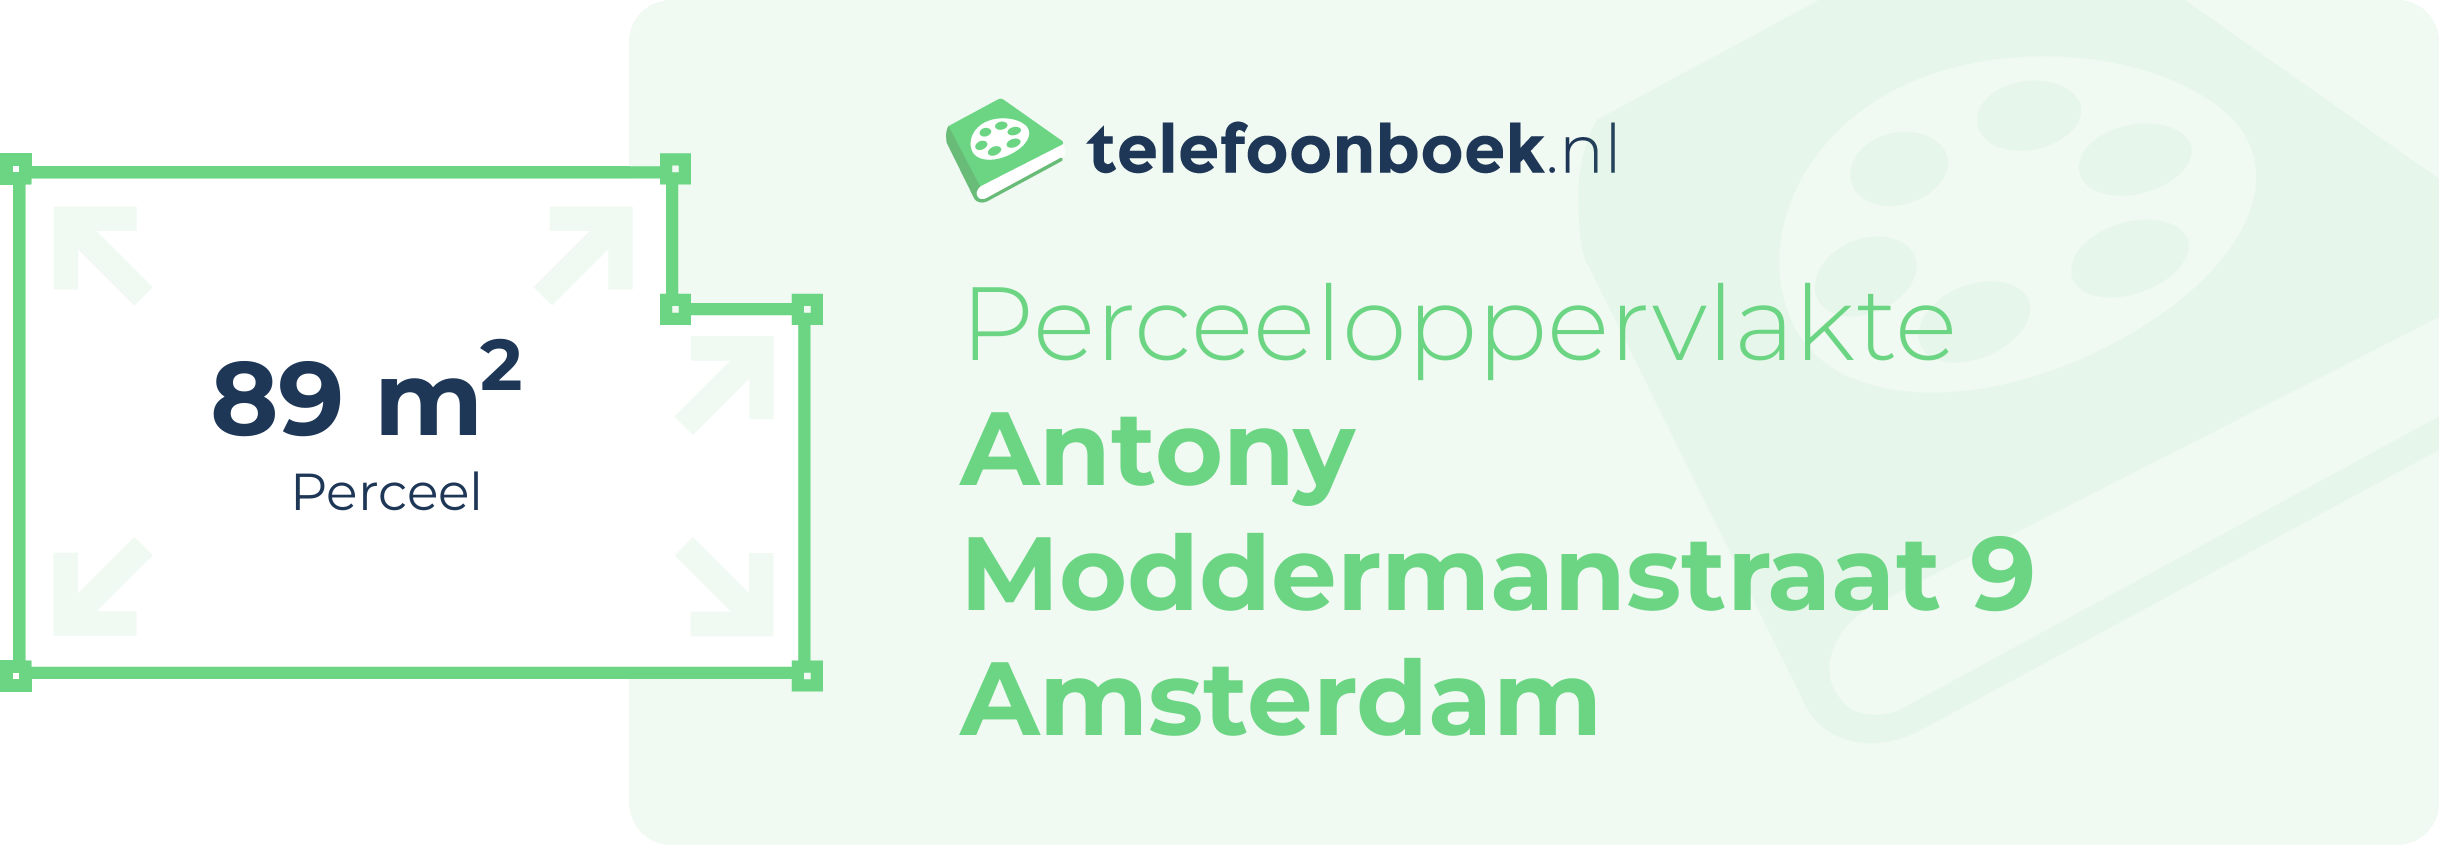 Perceeloppervlakte Antony Moddermanstraat 9 Amsterdam